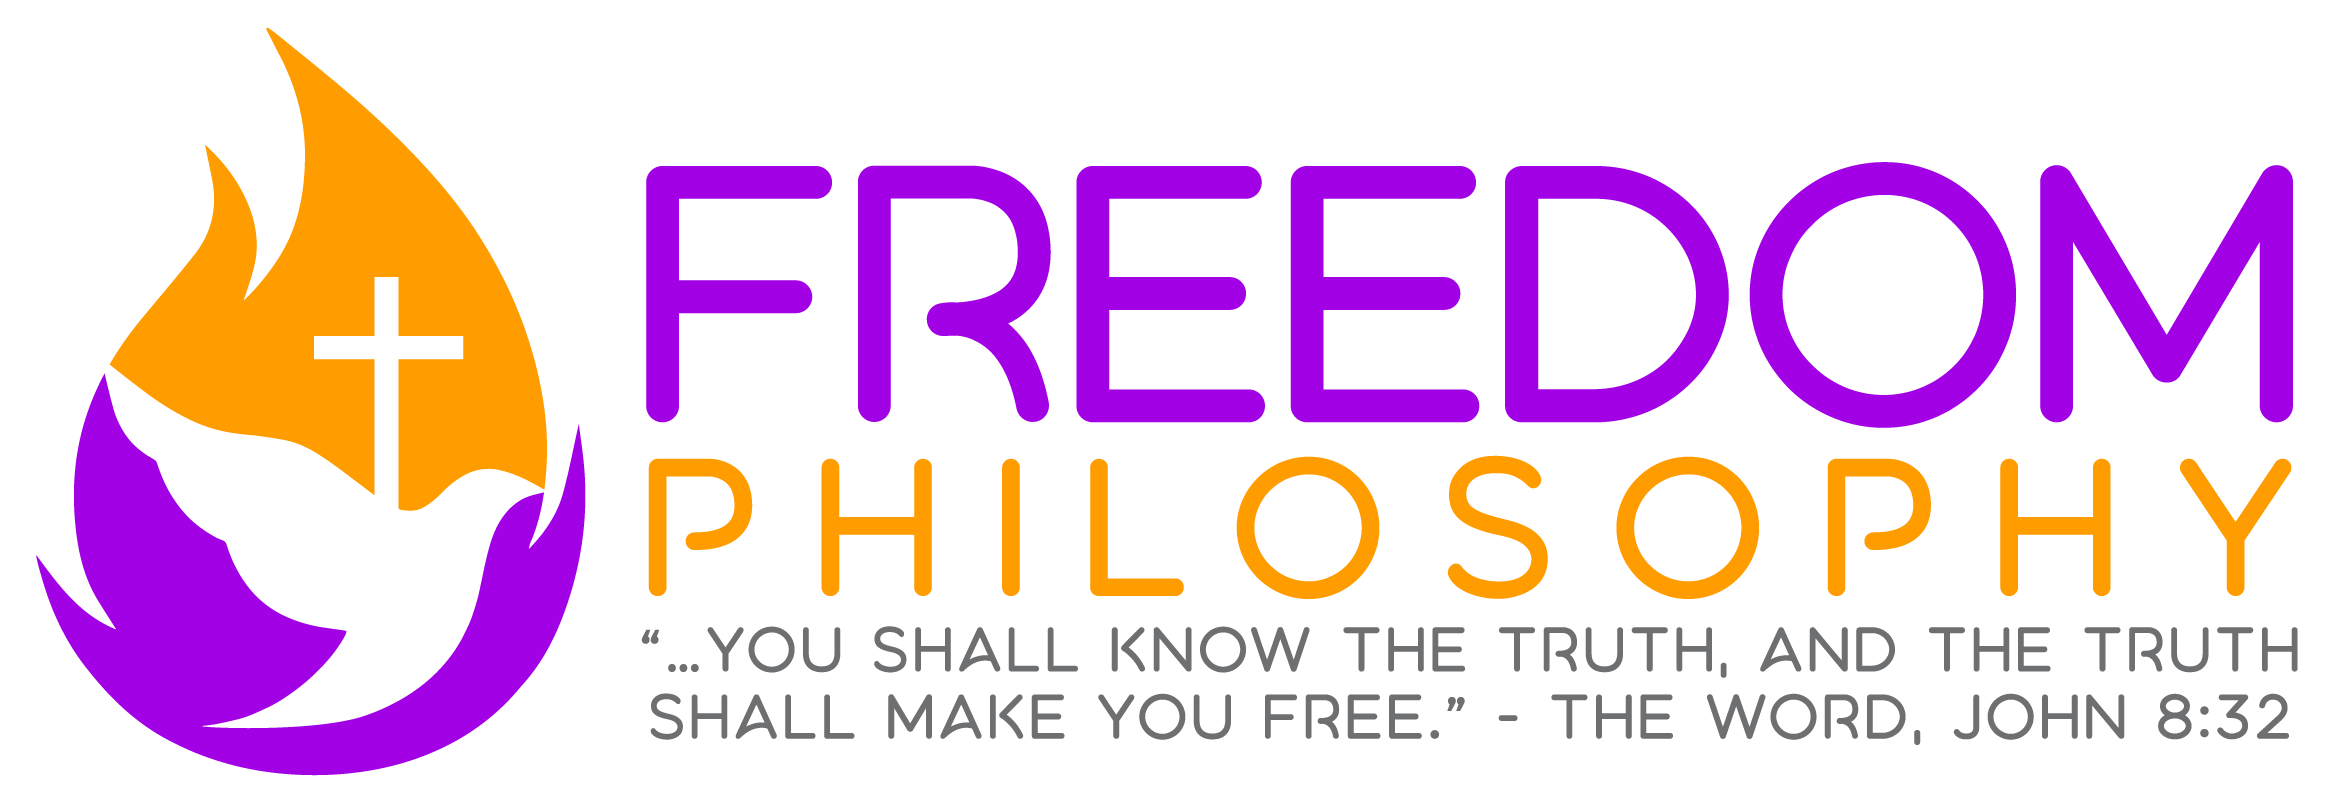 Freedom Philosophy